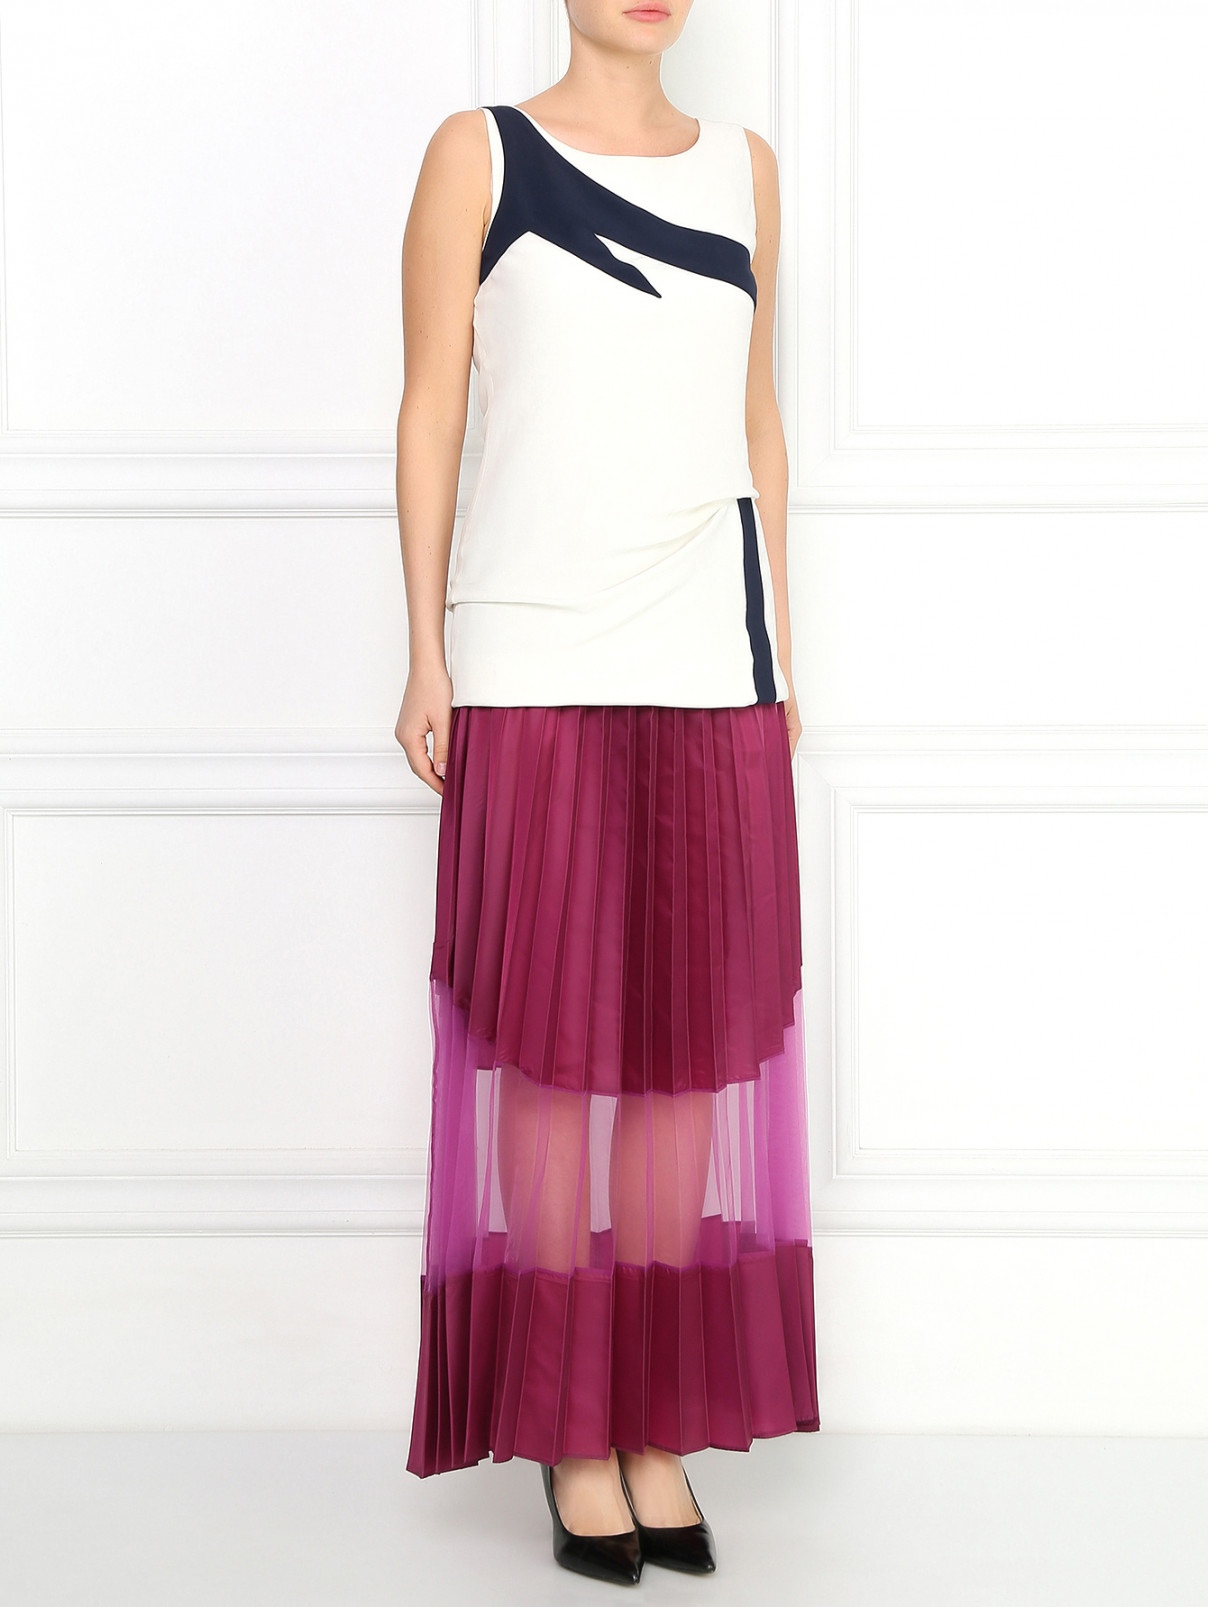 Плиссированная юбка-макси Jean Paul Gaultier  –  Модель Общий вид  – Цвет:  Фиолетовый